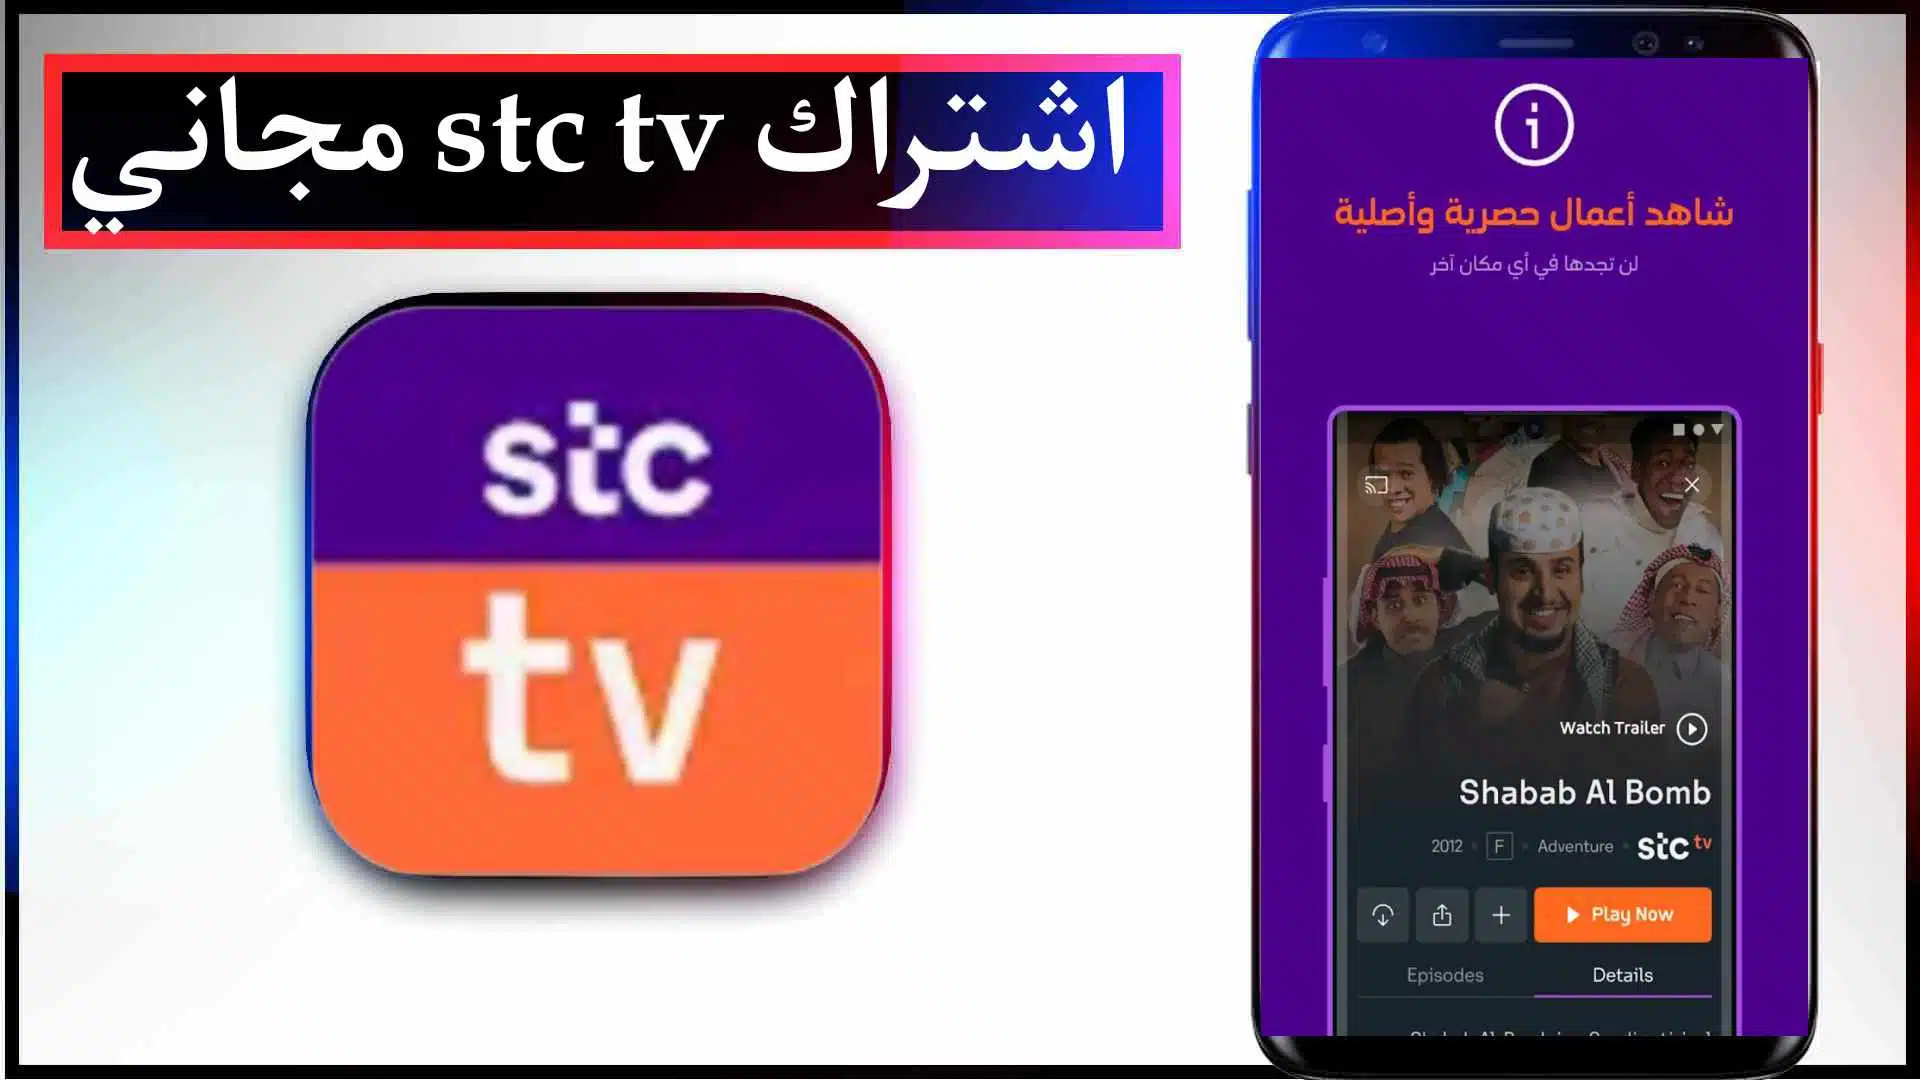 تحميل تطبيق stc tv مهكر للاندرويد وللايفون اشتراك مجاني لمشاهدة الافلام والمسلسلات